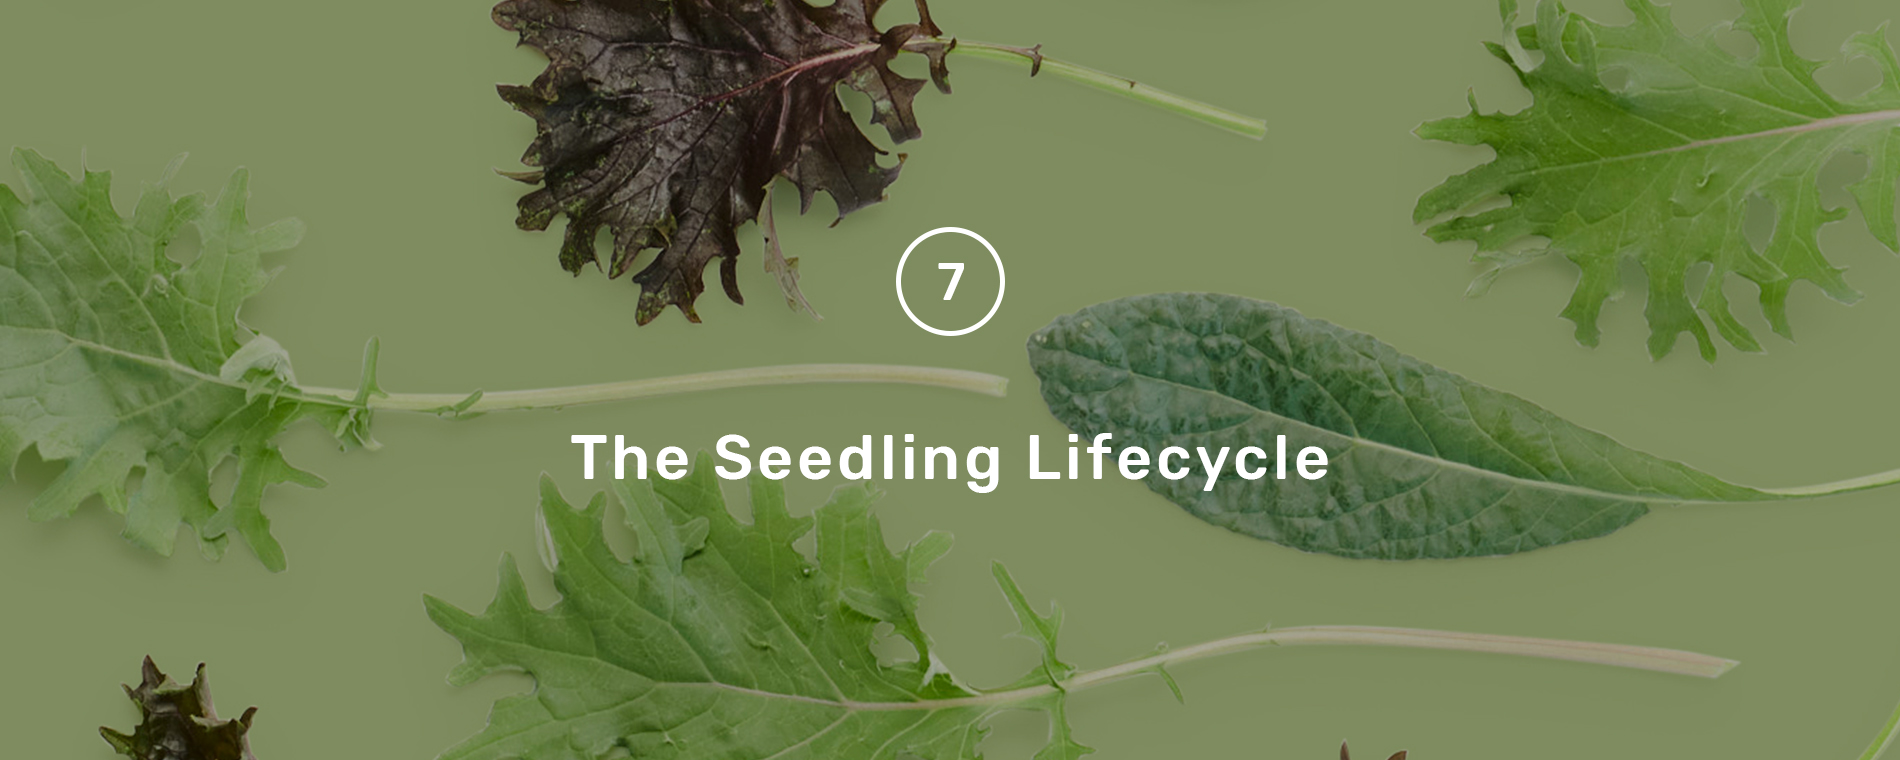 seedling_lifecycle_hero